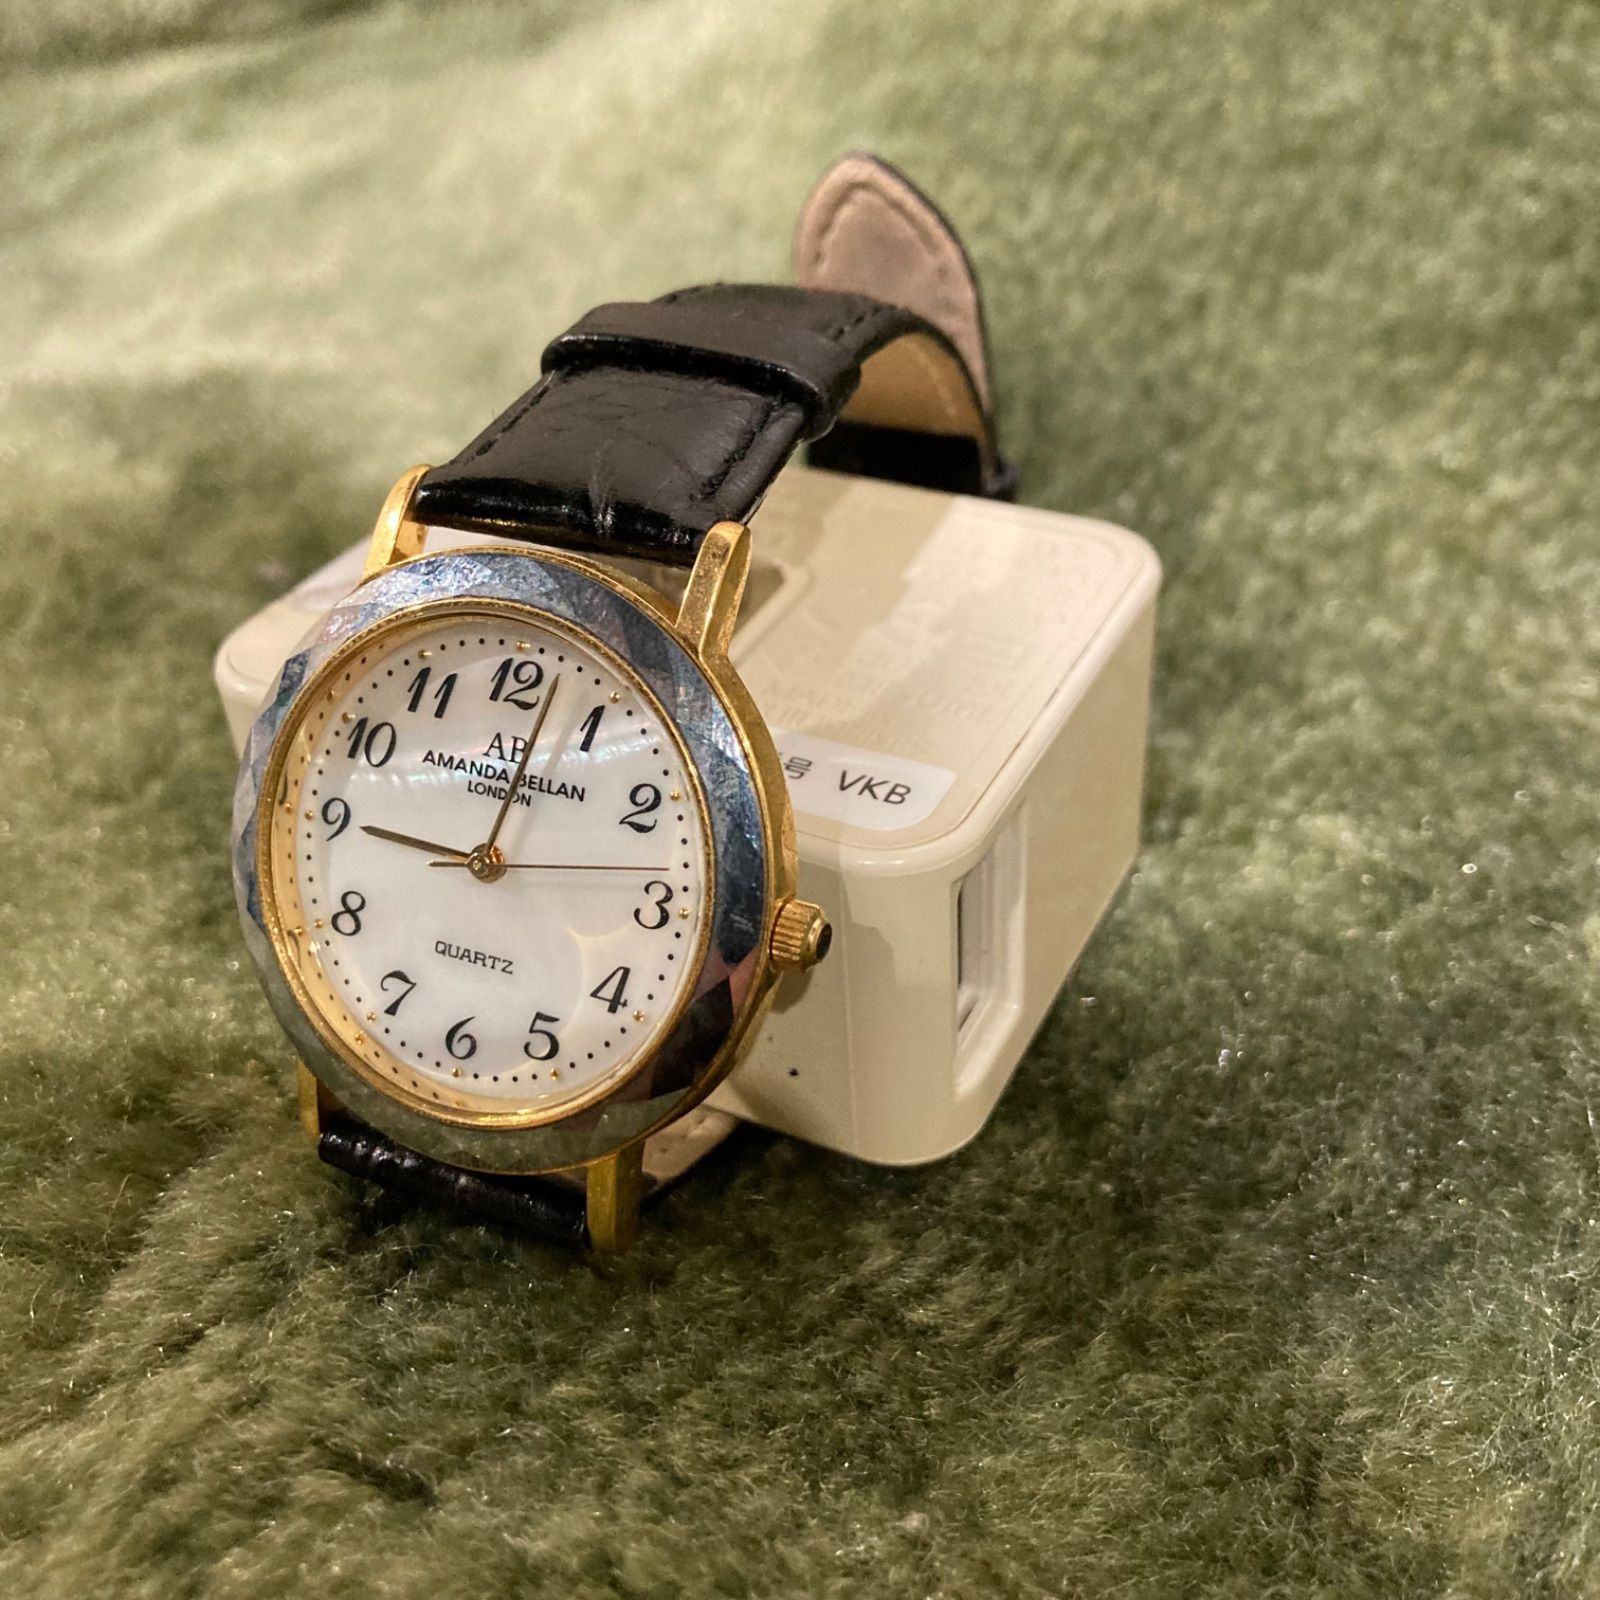 AMANDA BELLAN LONDON/レディース腕時計【新品】 - アクセサリー